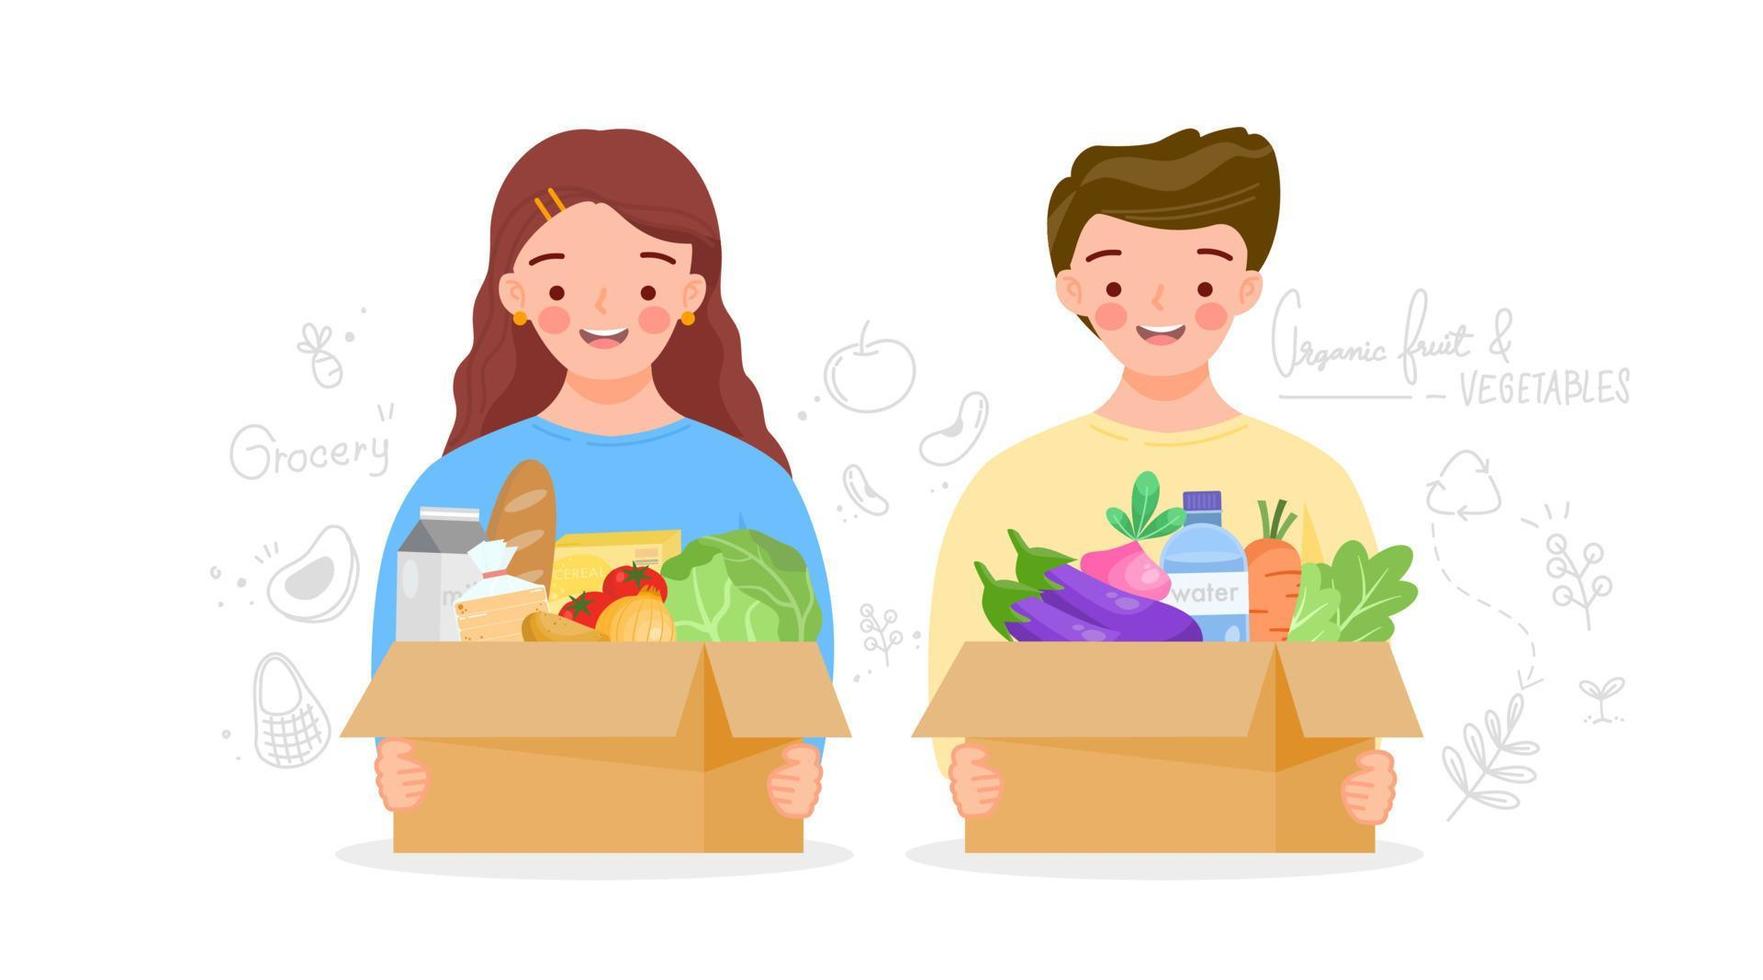 jongen en meisje houden kartonnen doos voor hergebruik vast met groenteboer. herbruikbare doos met fruit, groenten, melk, brood. voedingsproducten in eco-pakket. biologische producten van de boerderij. platte vectorillustratie. vector